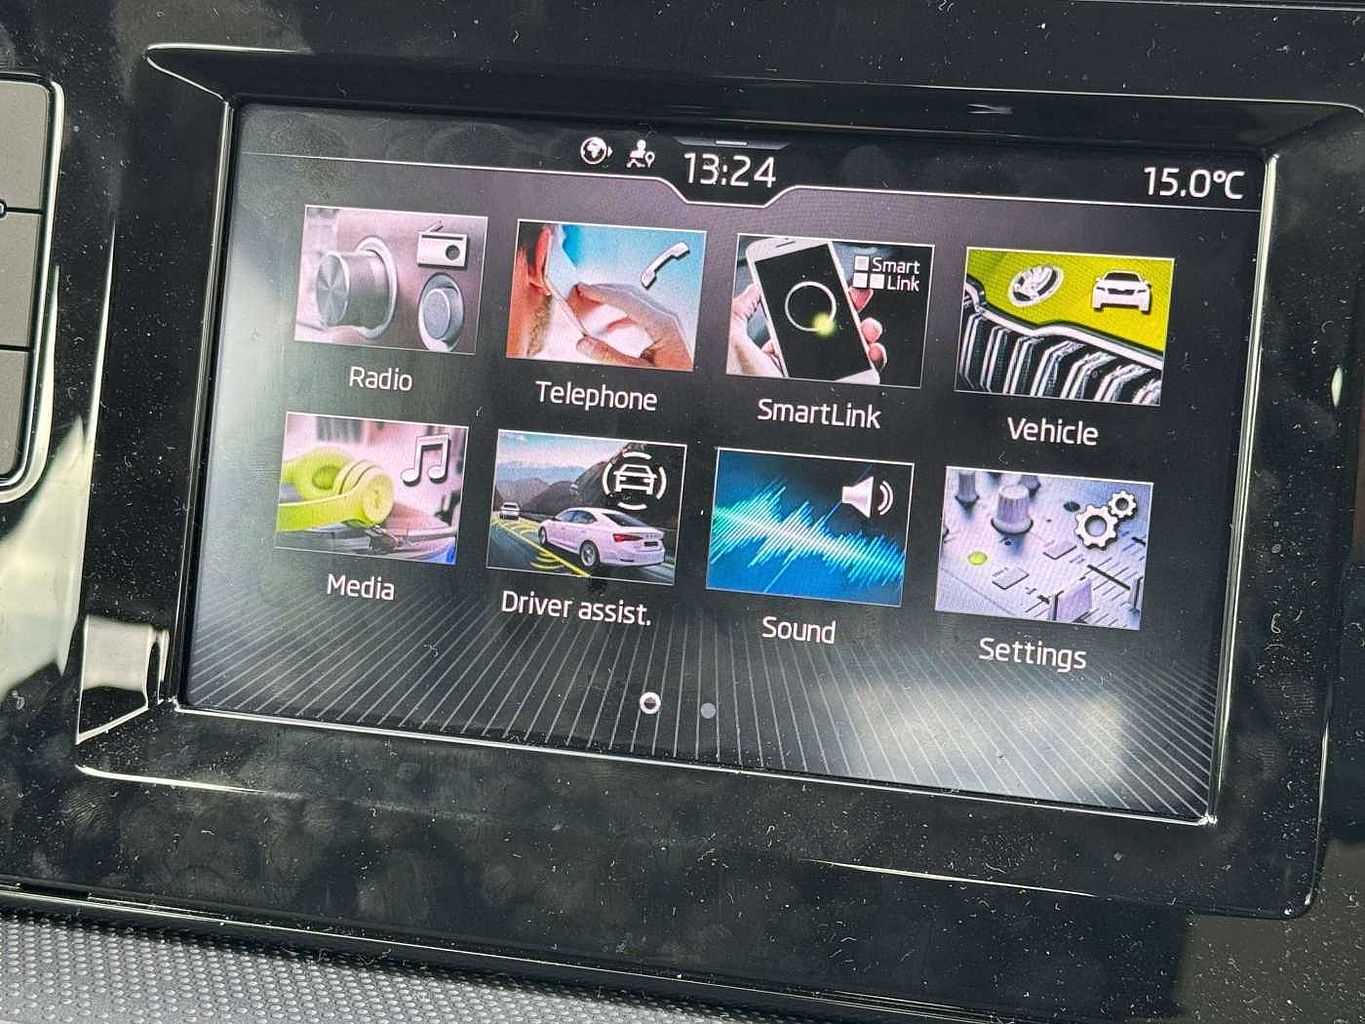 SKODA Fabia 1.0 TSI (110ps) SE Comfort DSG 5Dr Hatchback